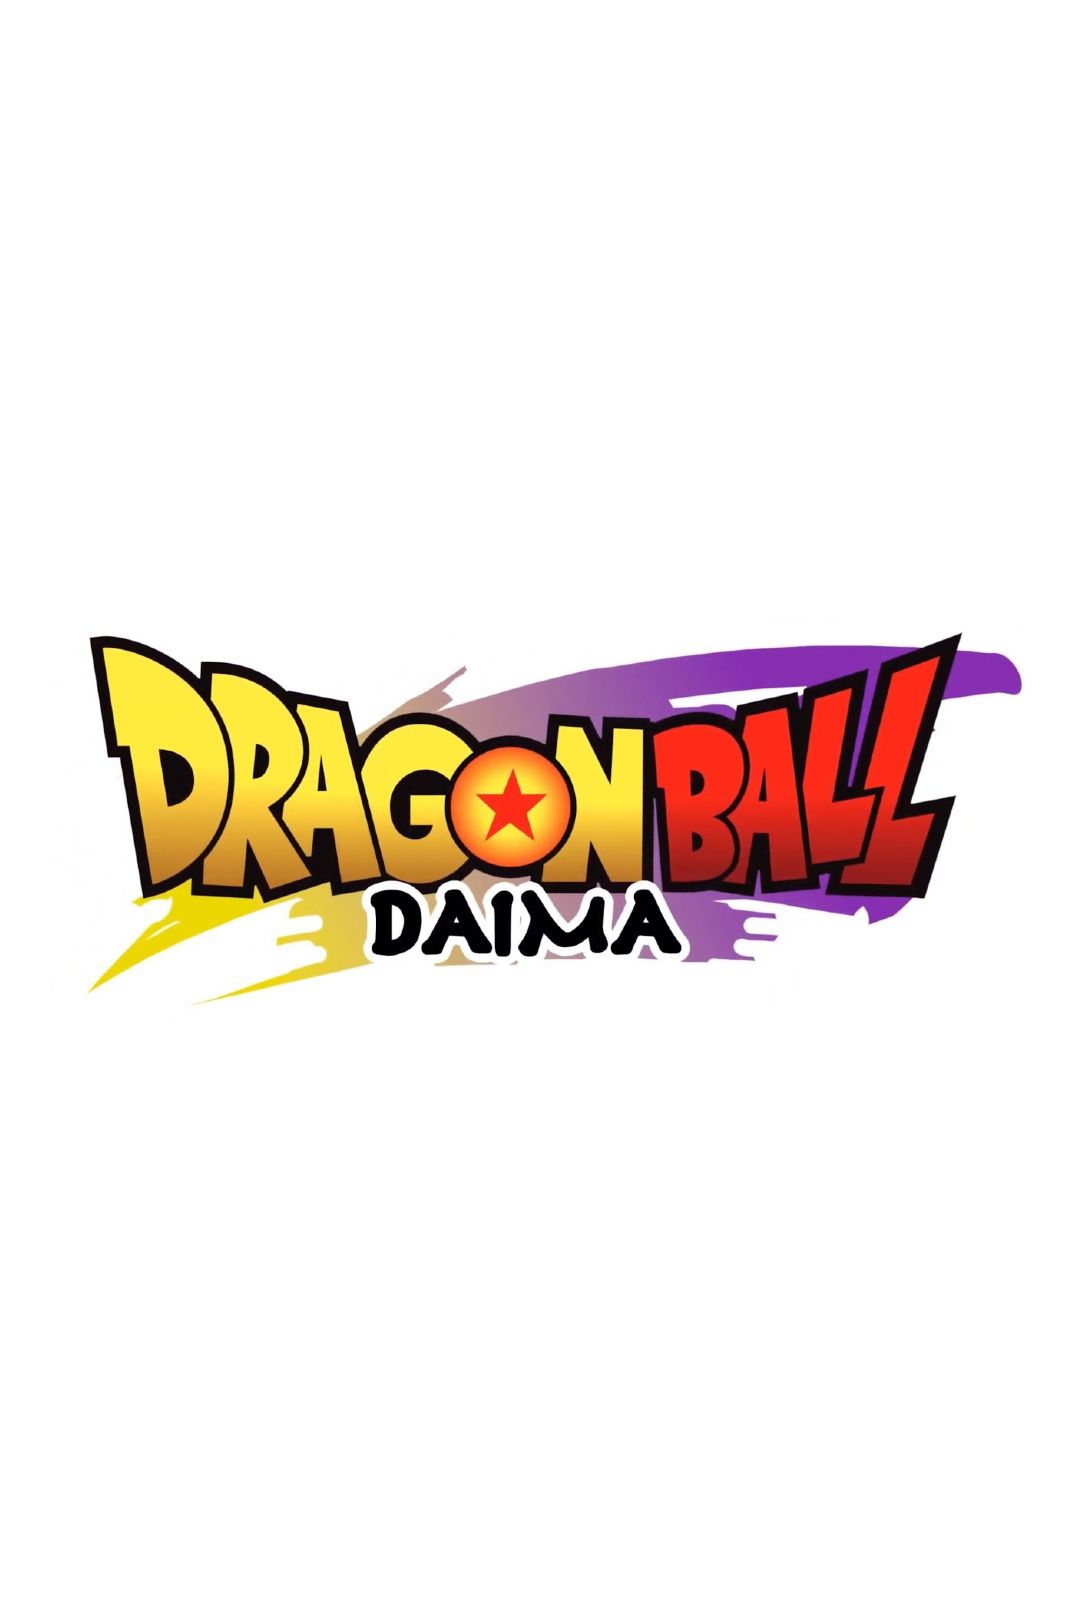 Dragon Ball Daima  Janela de lançamento, trailer, história e mais